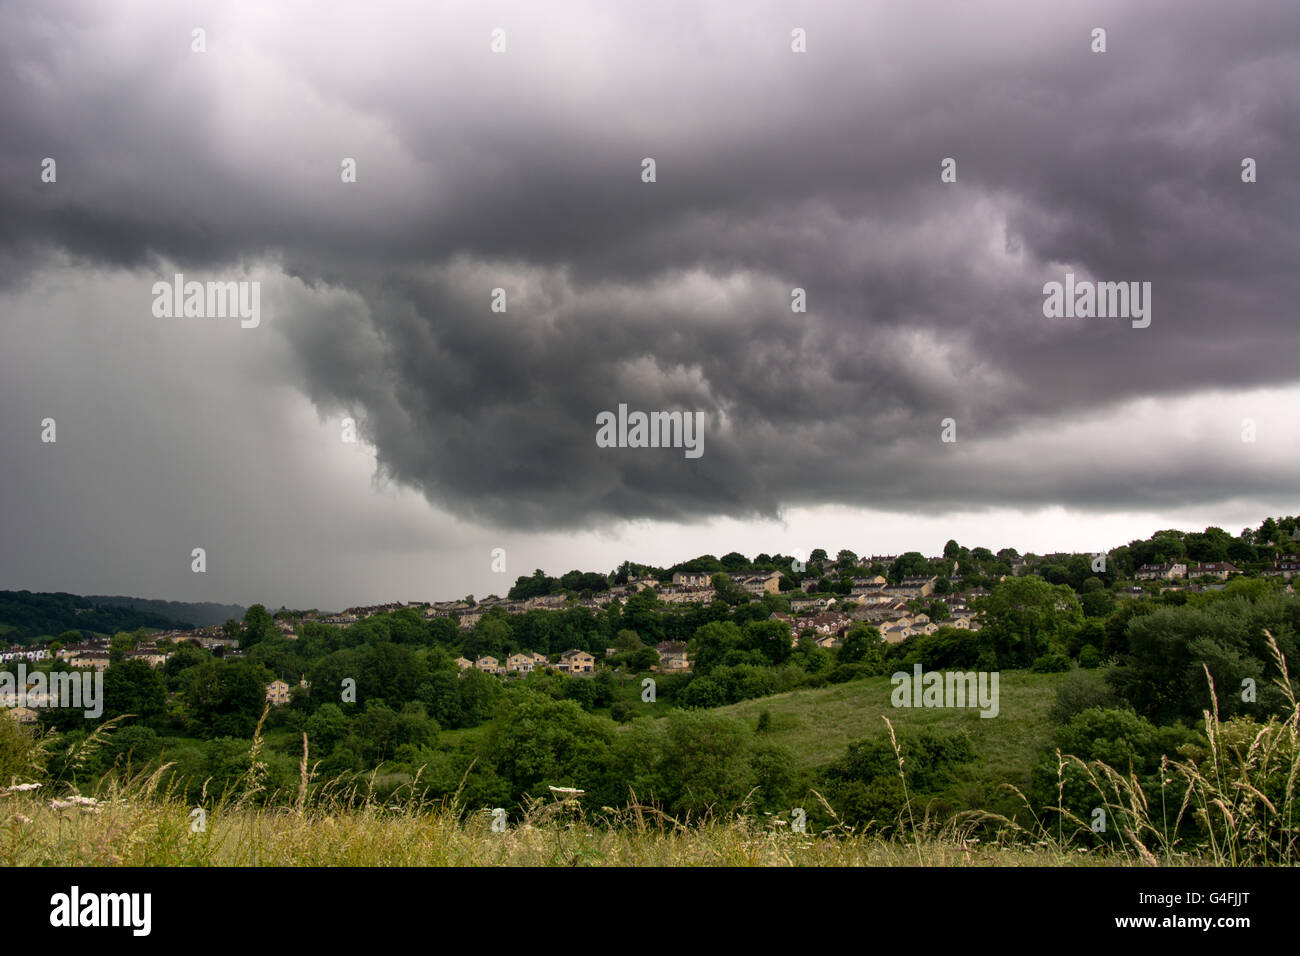 Sommer Gewitterwolken über der Wanne. Wirbelnden dunkle Gewitterwolken über der Stadt in Somerset, England, bringen Starkregen Stockfoto